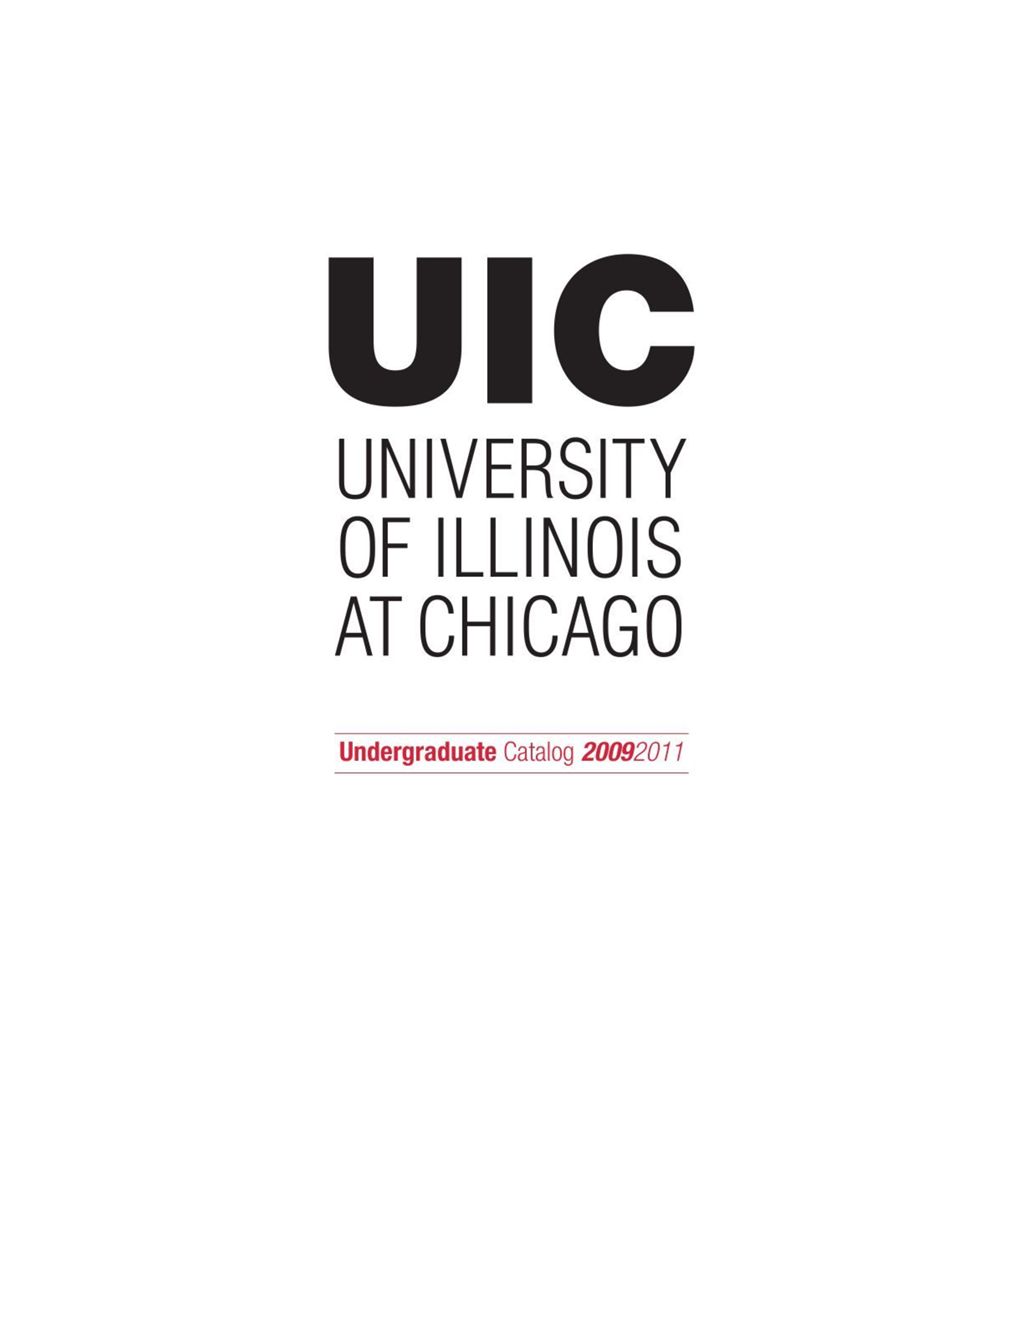 Undergraduate Catalog, 2009-2011